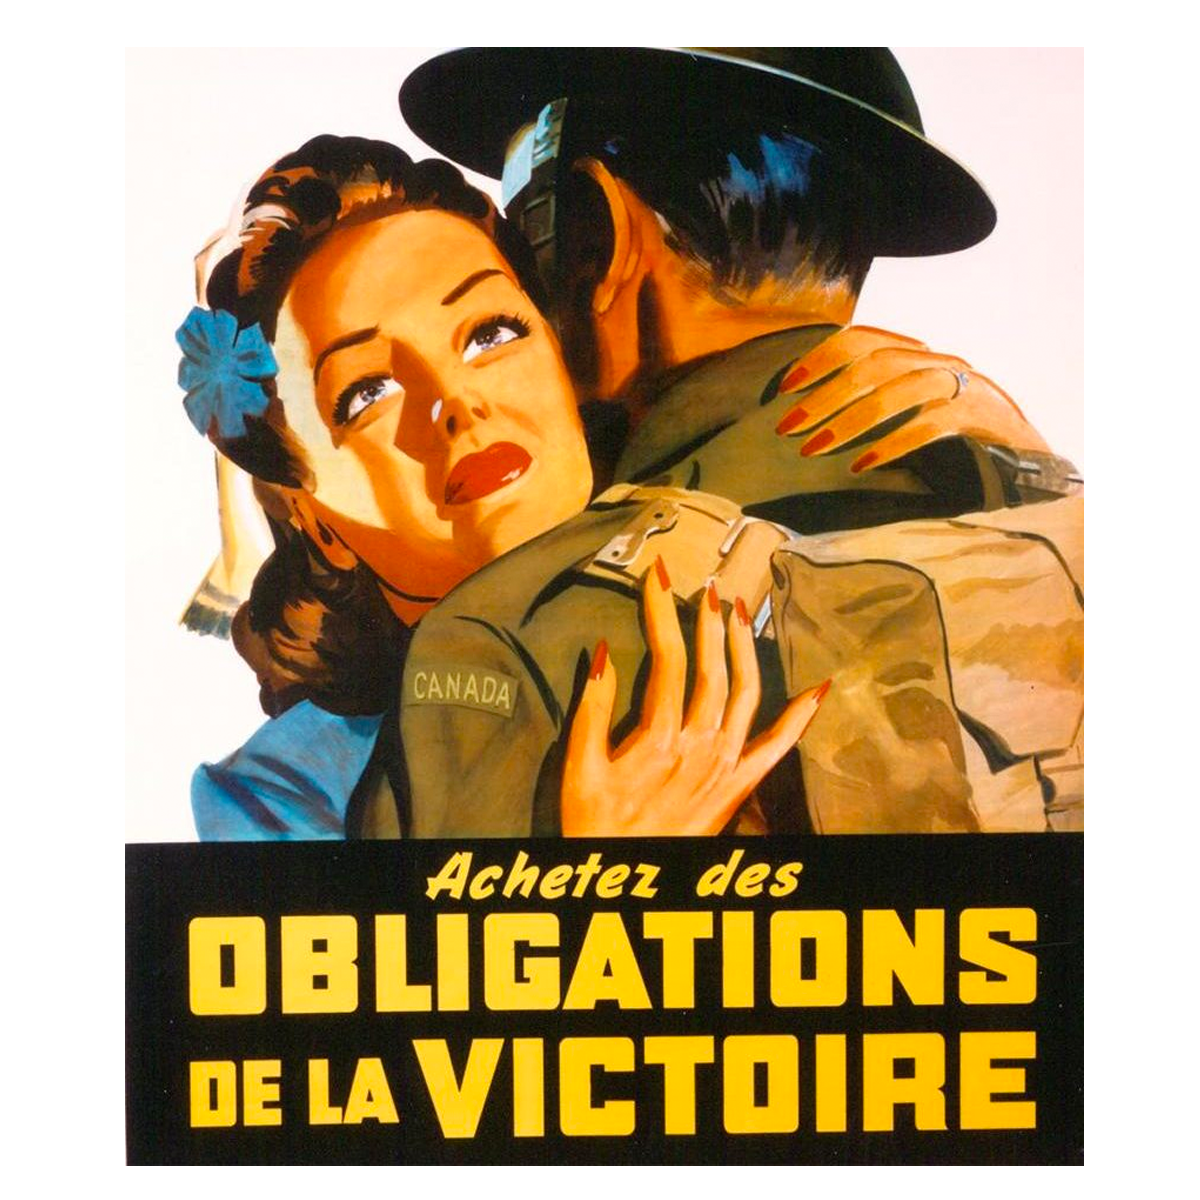 Illustration d'une femme des années 1940, vêtue d'une robe bleue, qui embrasse un soldat portant un uniforme vert olive, un casque et un sac à dos beige. Sous l'illustration, on peut lire : Achetez des obligations de la victoire. 